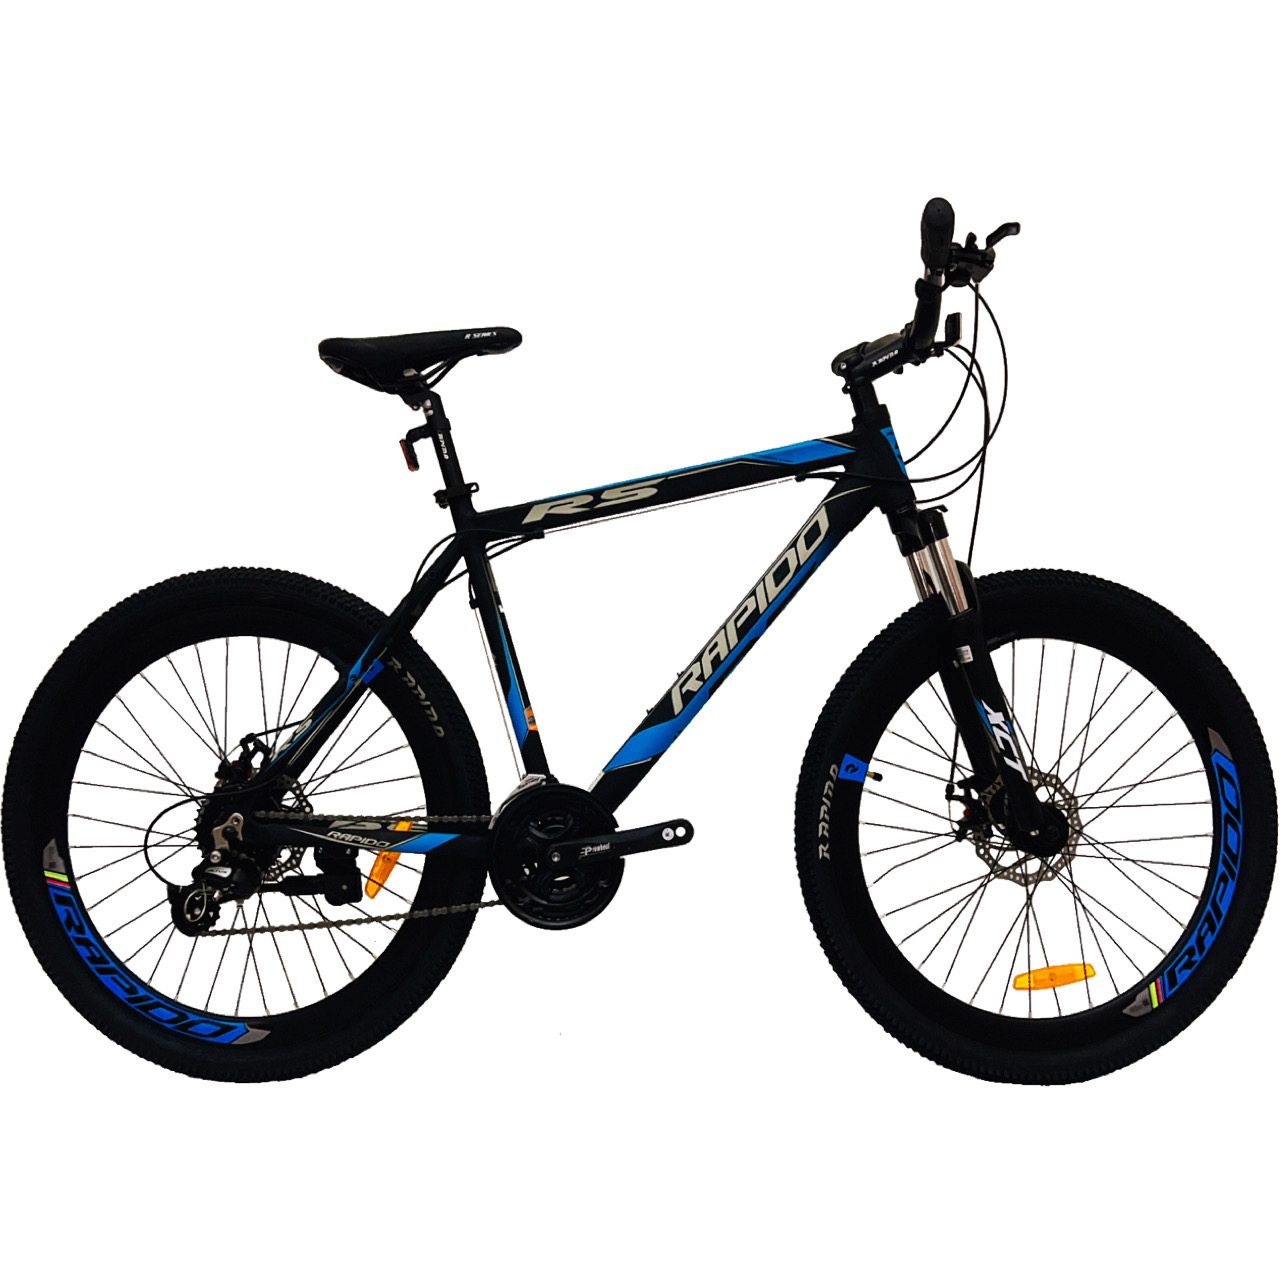 نکته خرید - قیمت روز دوچرخه کوهستان راپیدو مدل R5 کد 12 سایز 26 خرید